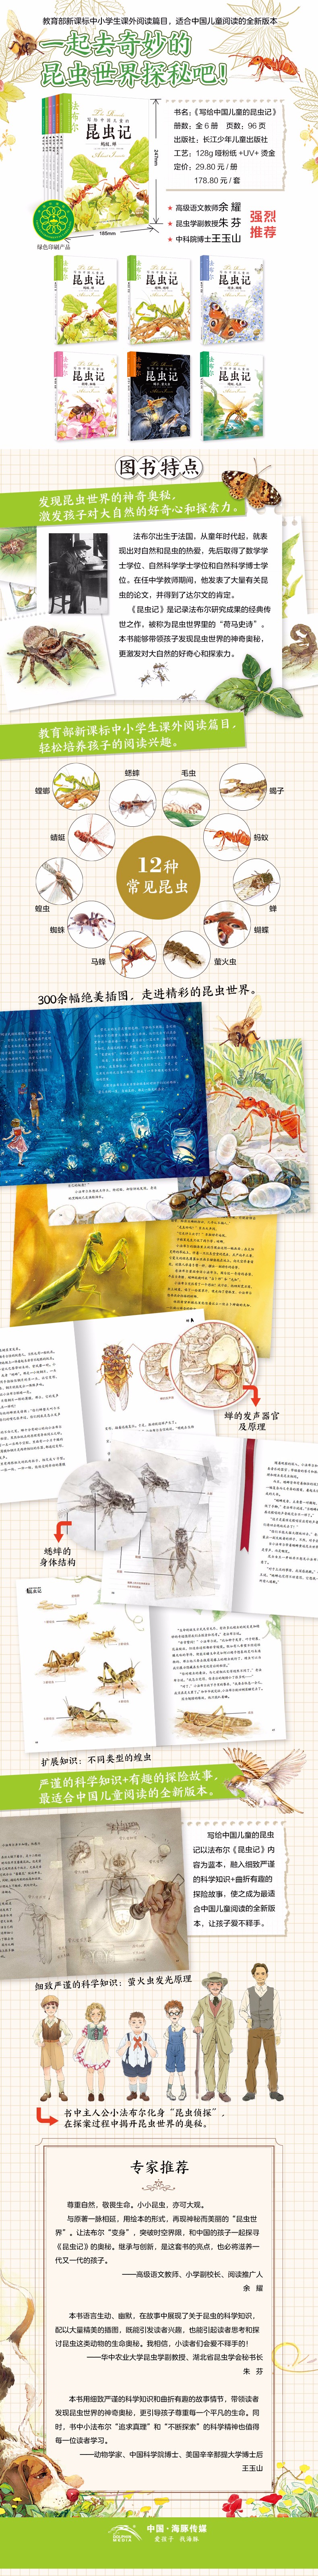 写给中国儿童的昆虫记-详情页-790.jpg